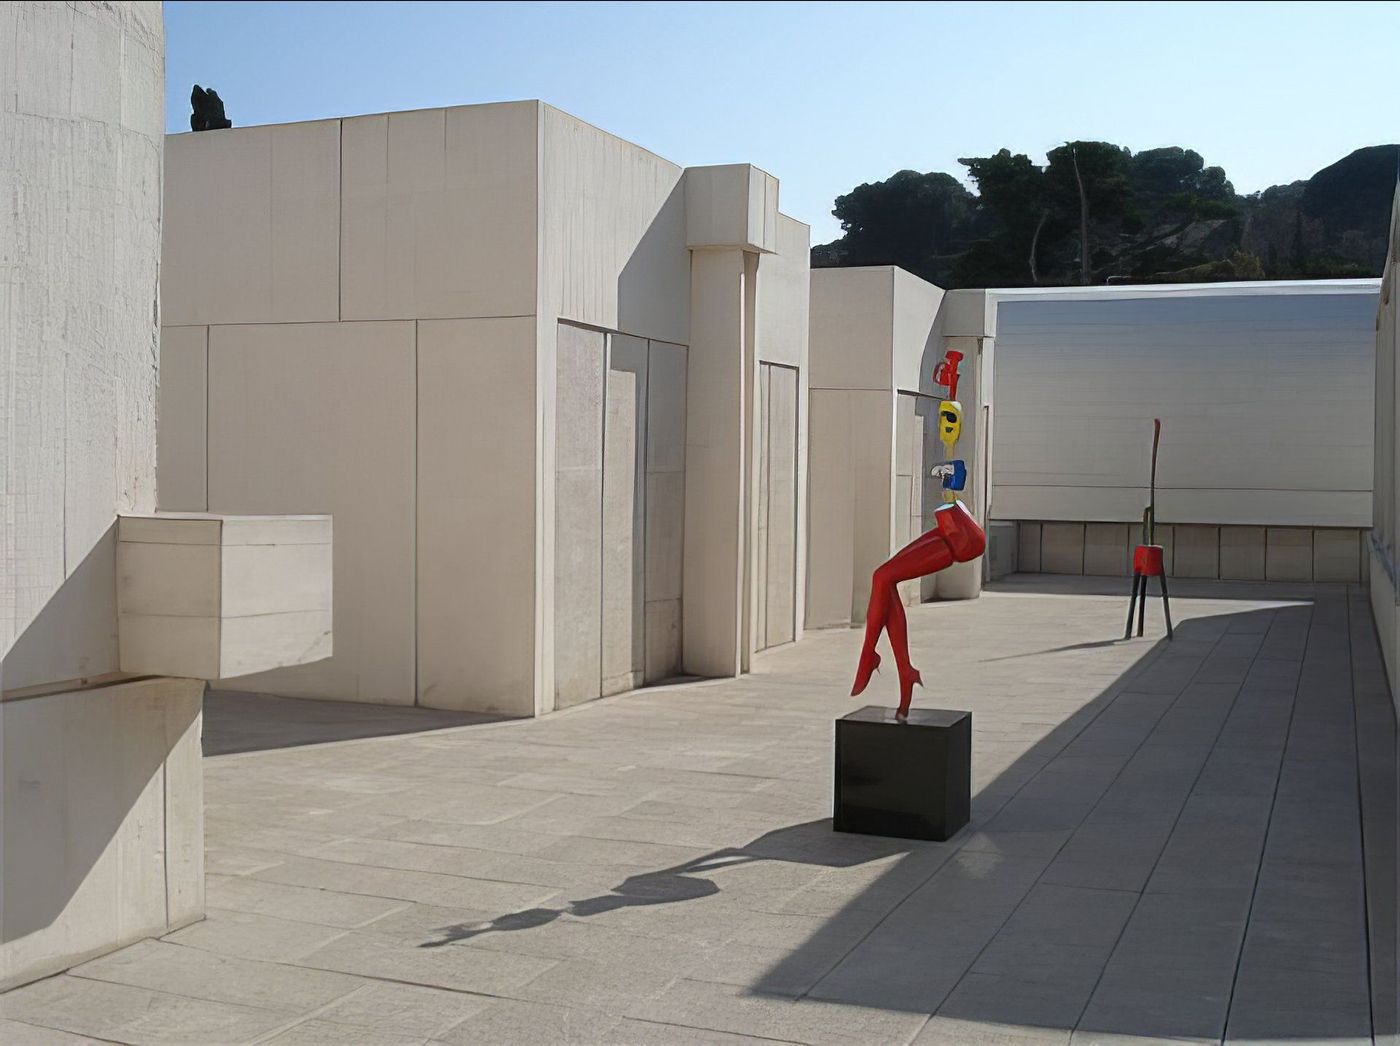 Fundació Miró (Fondation Miró)